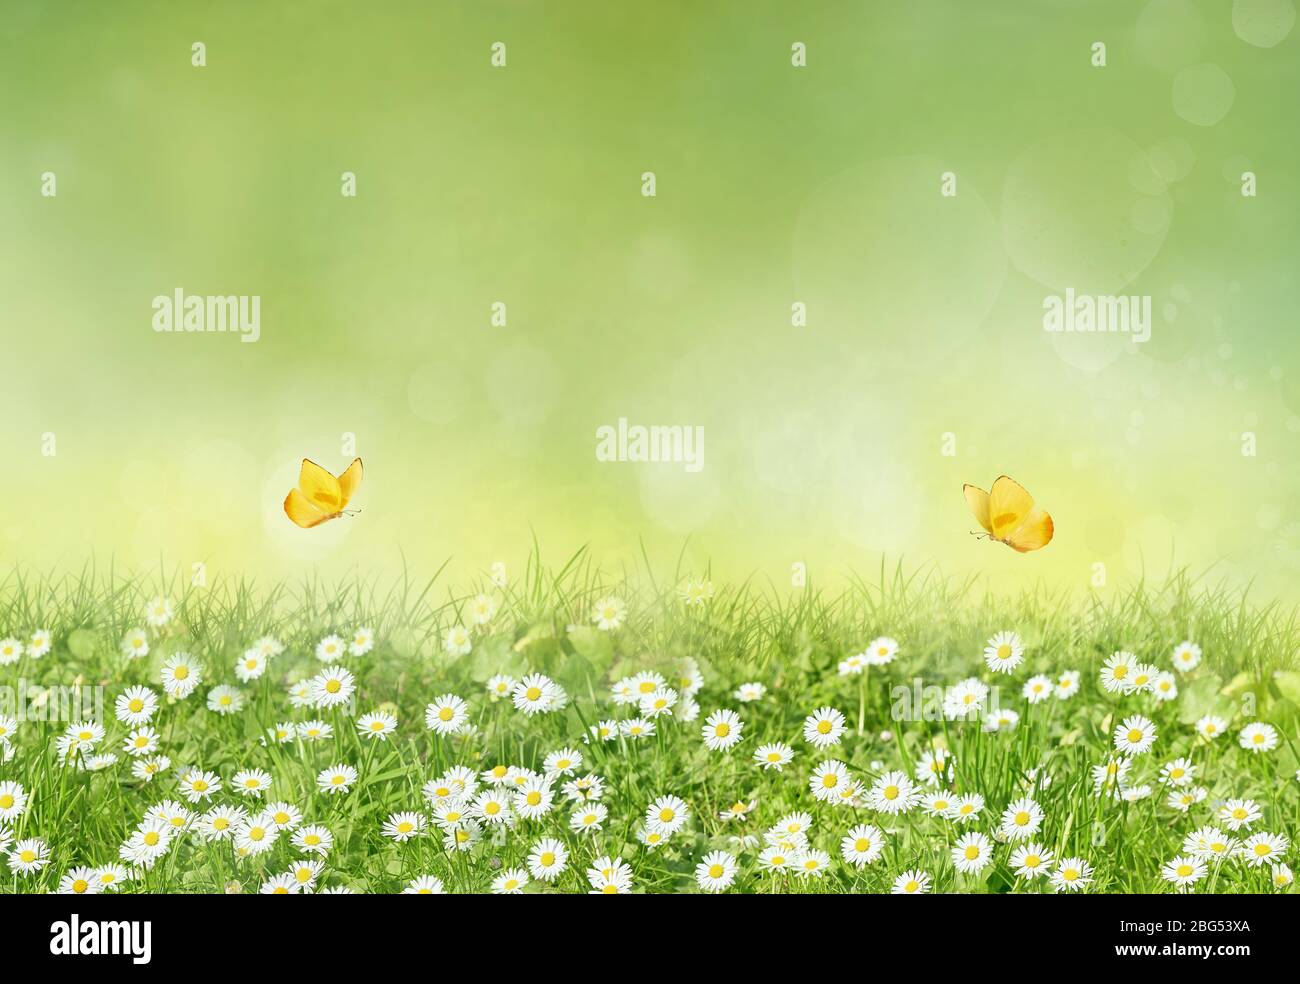 Hermosas flores silvestres manzanilla con mariposas amarillas. Primavera verano fondo. Gran formato horizontal, espacio de copia, colores verdes cálidos. Foto de stock